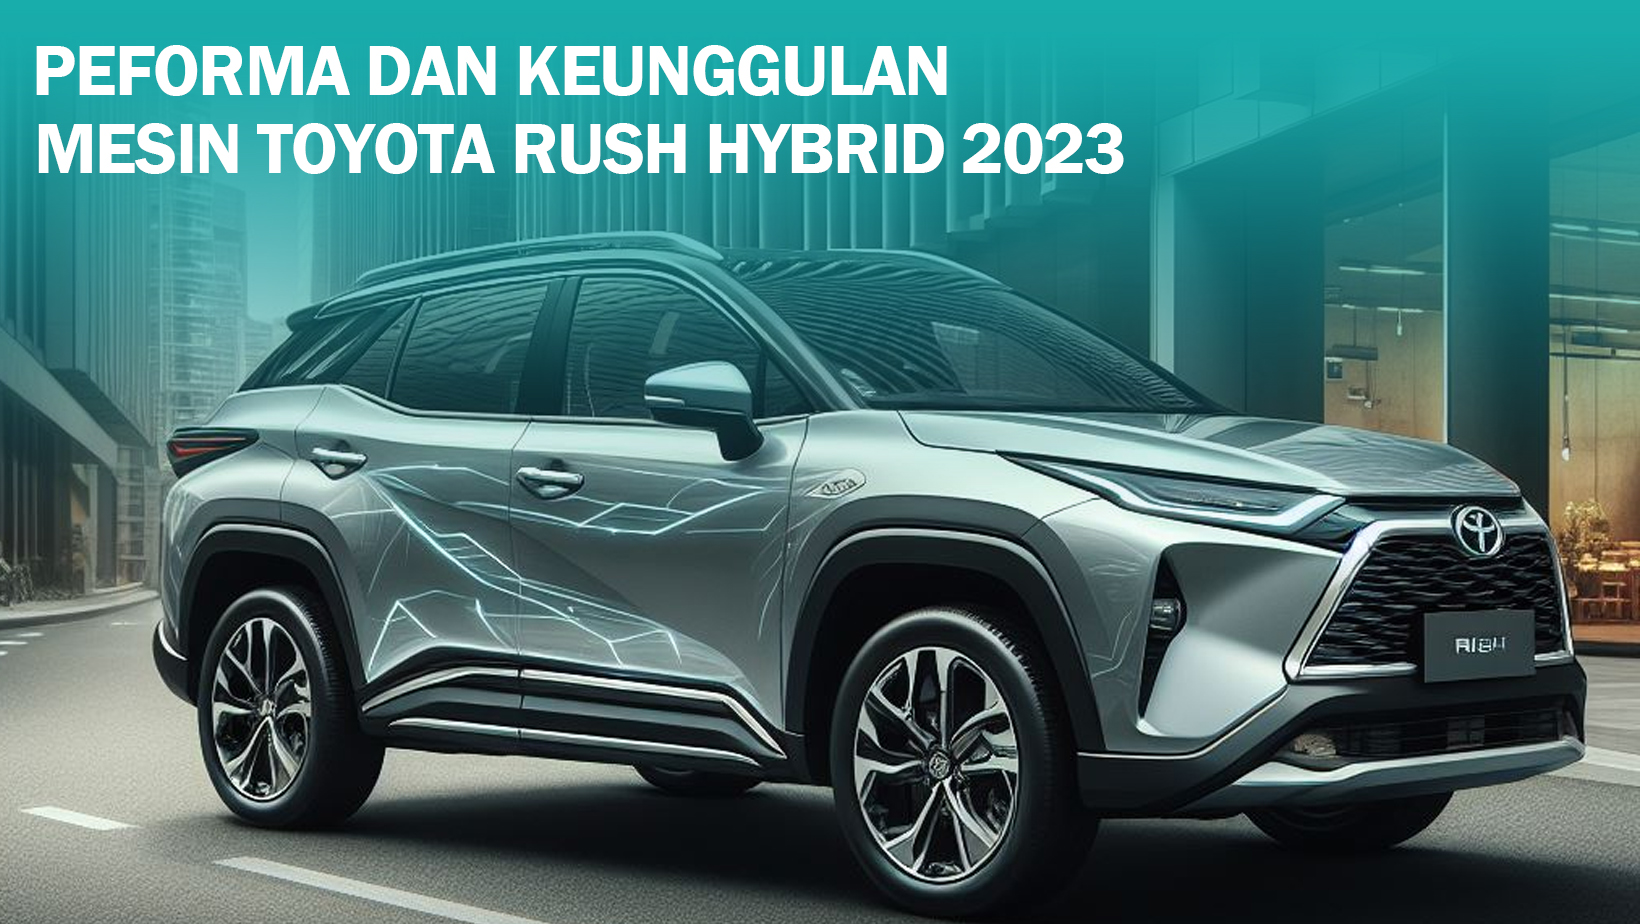 Mesin Toyota Rush Hybrid 2023 Tuai Pujian dari Pengguna, Berikut 7 Alasannya